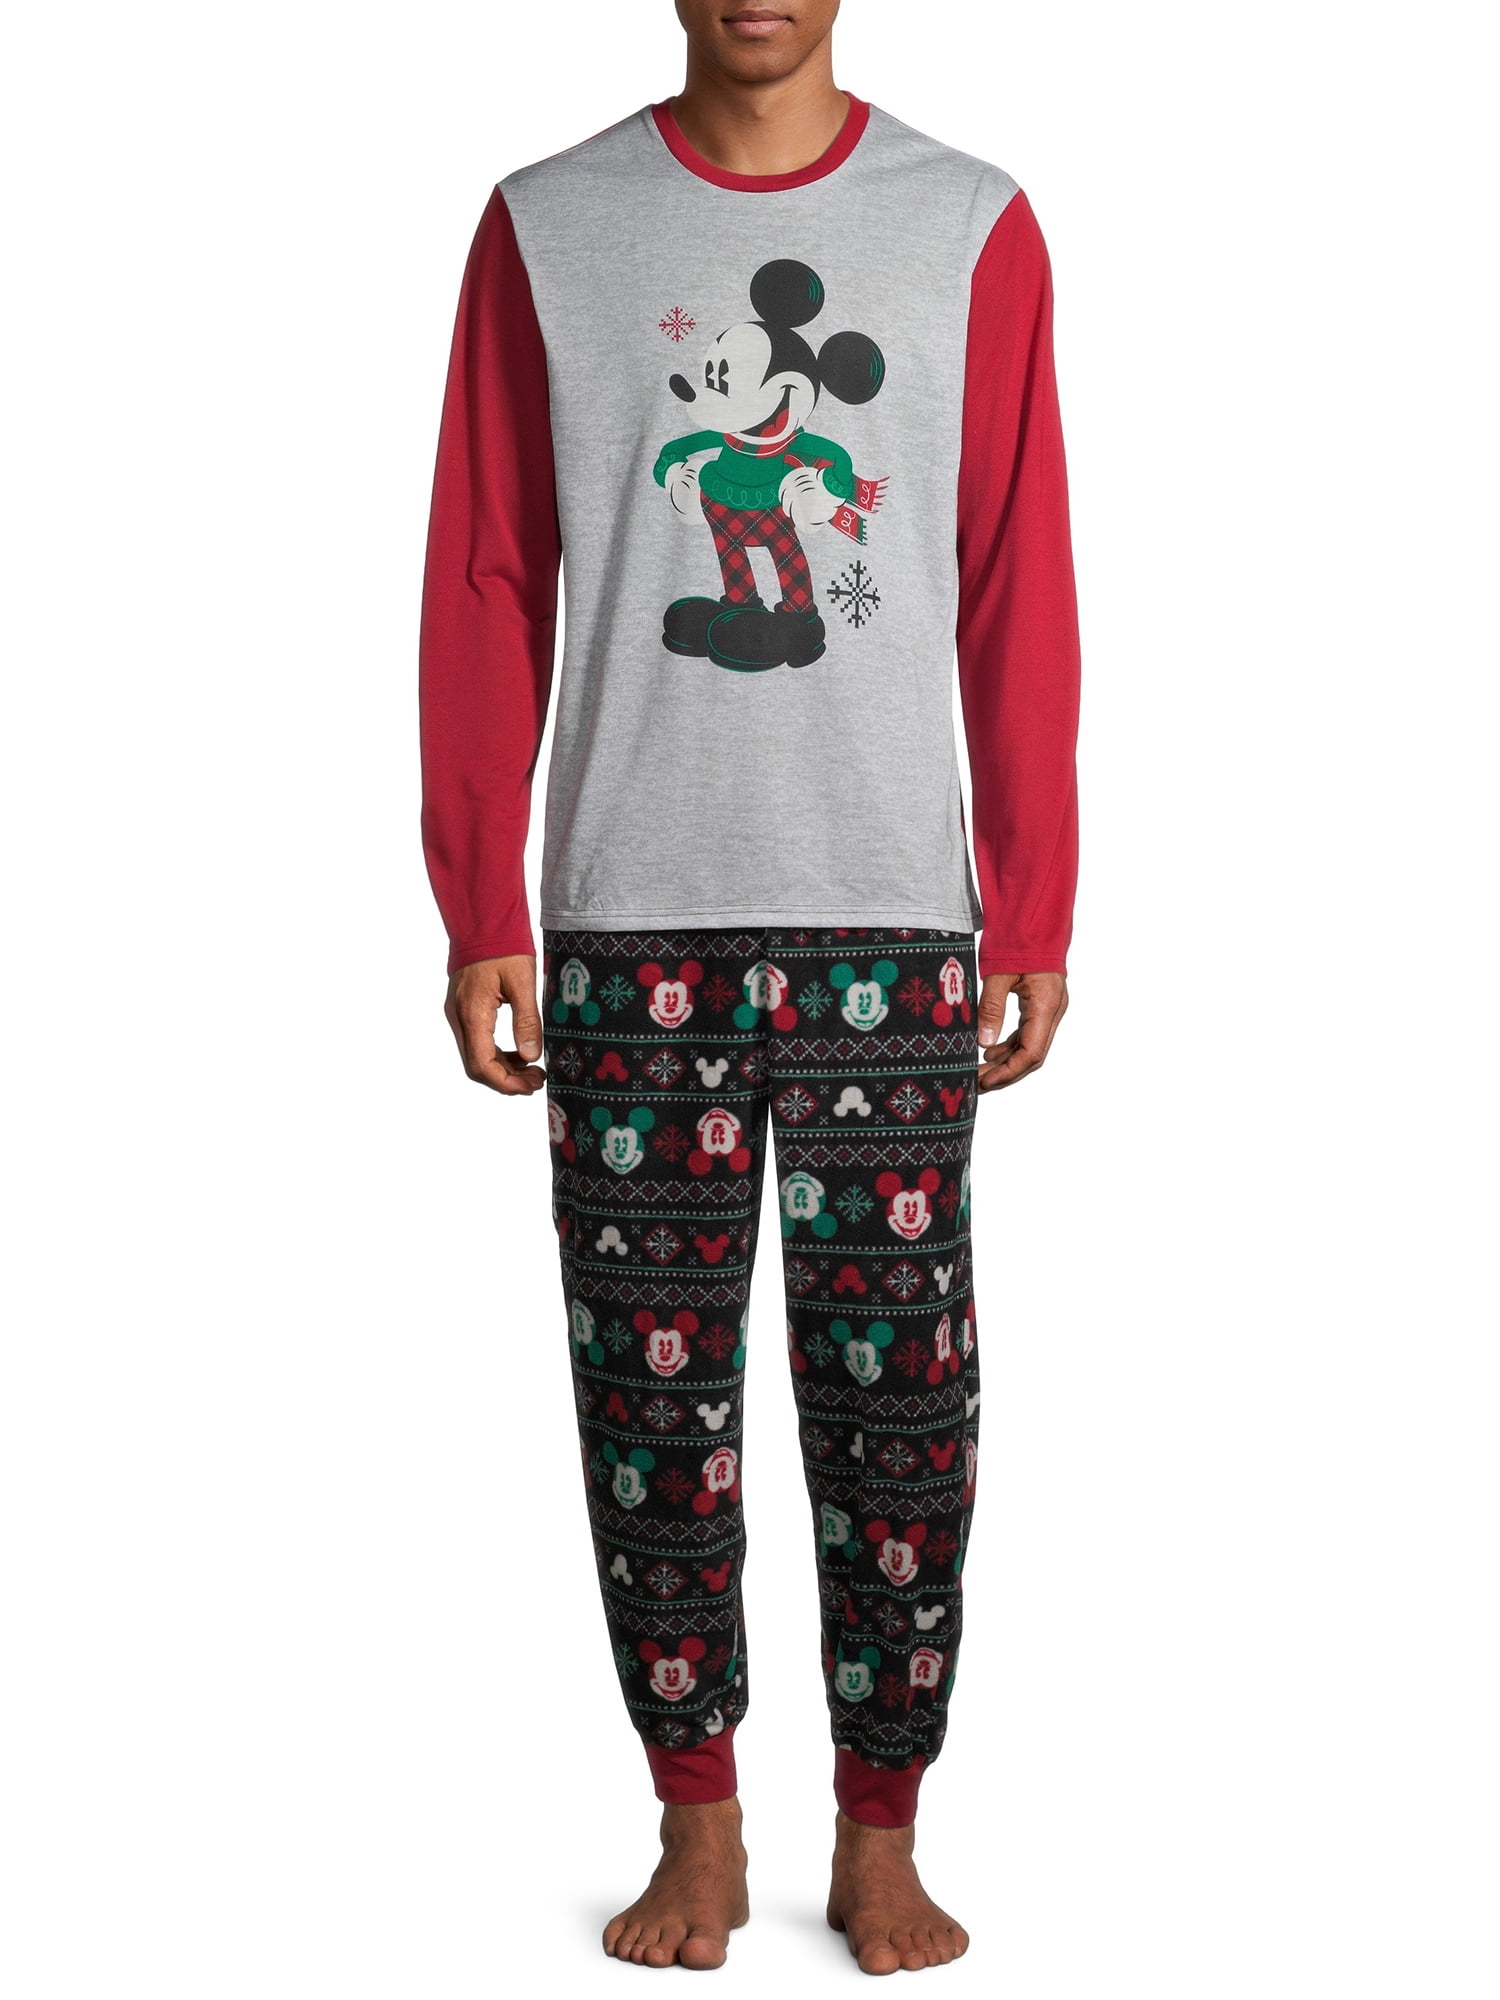 Disney Matching Family Christmas Pajamas Men's Mickey 2